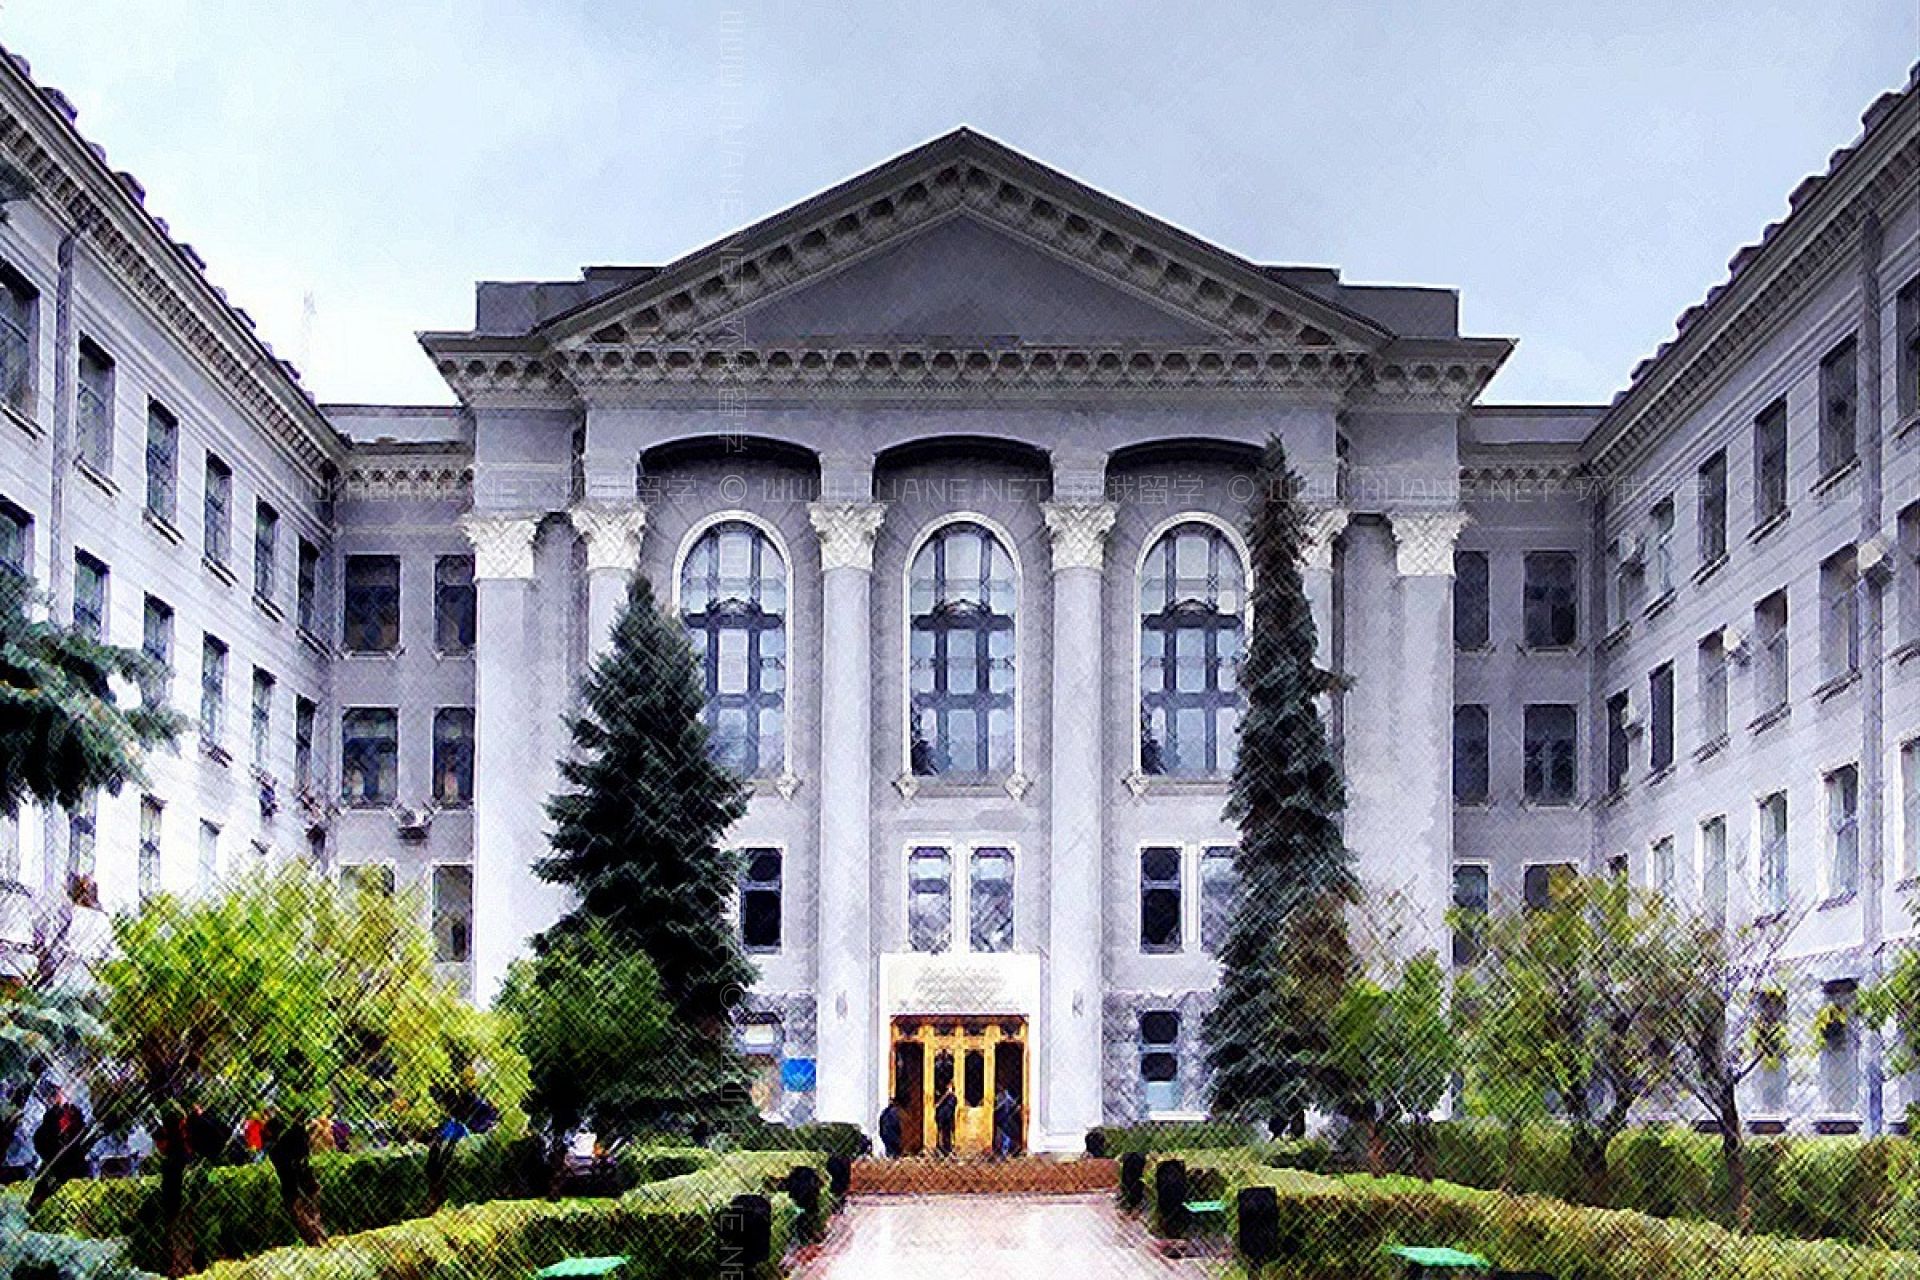 哈尔科夫国立无线电电子大学